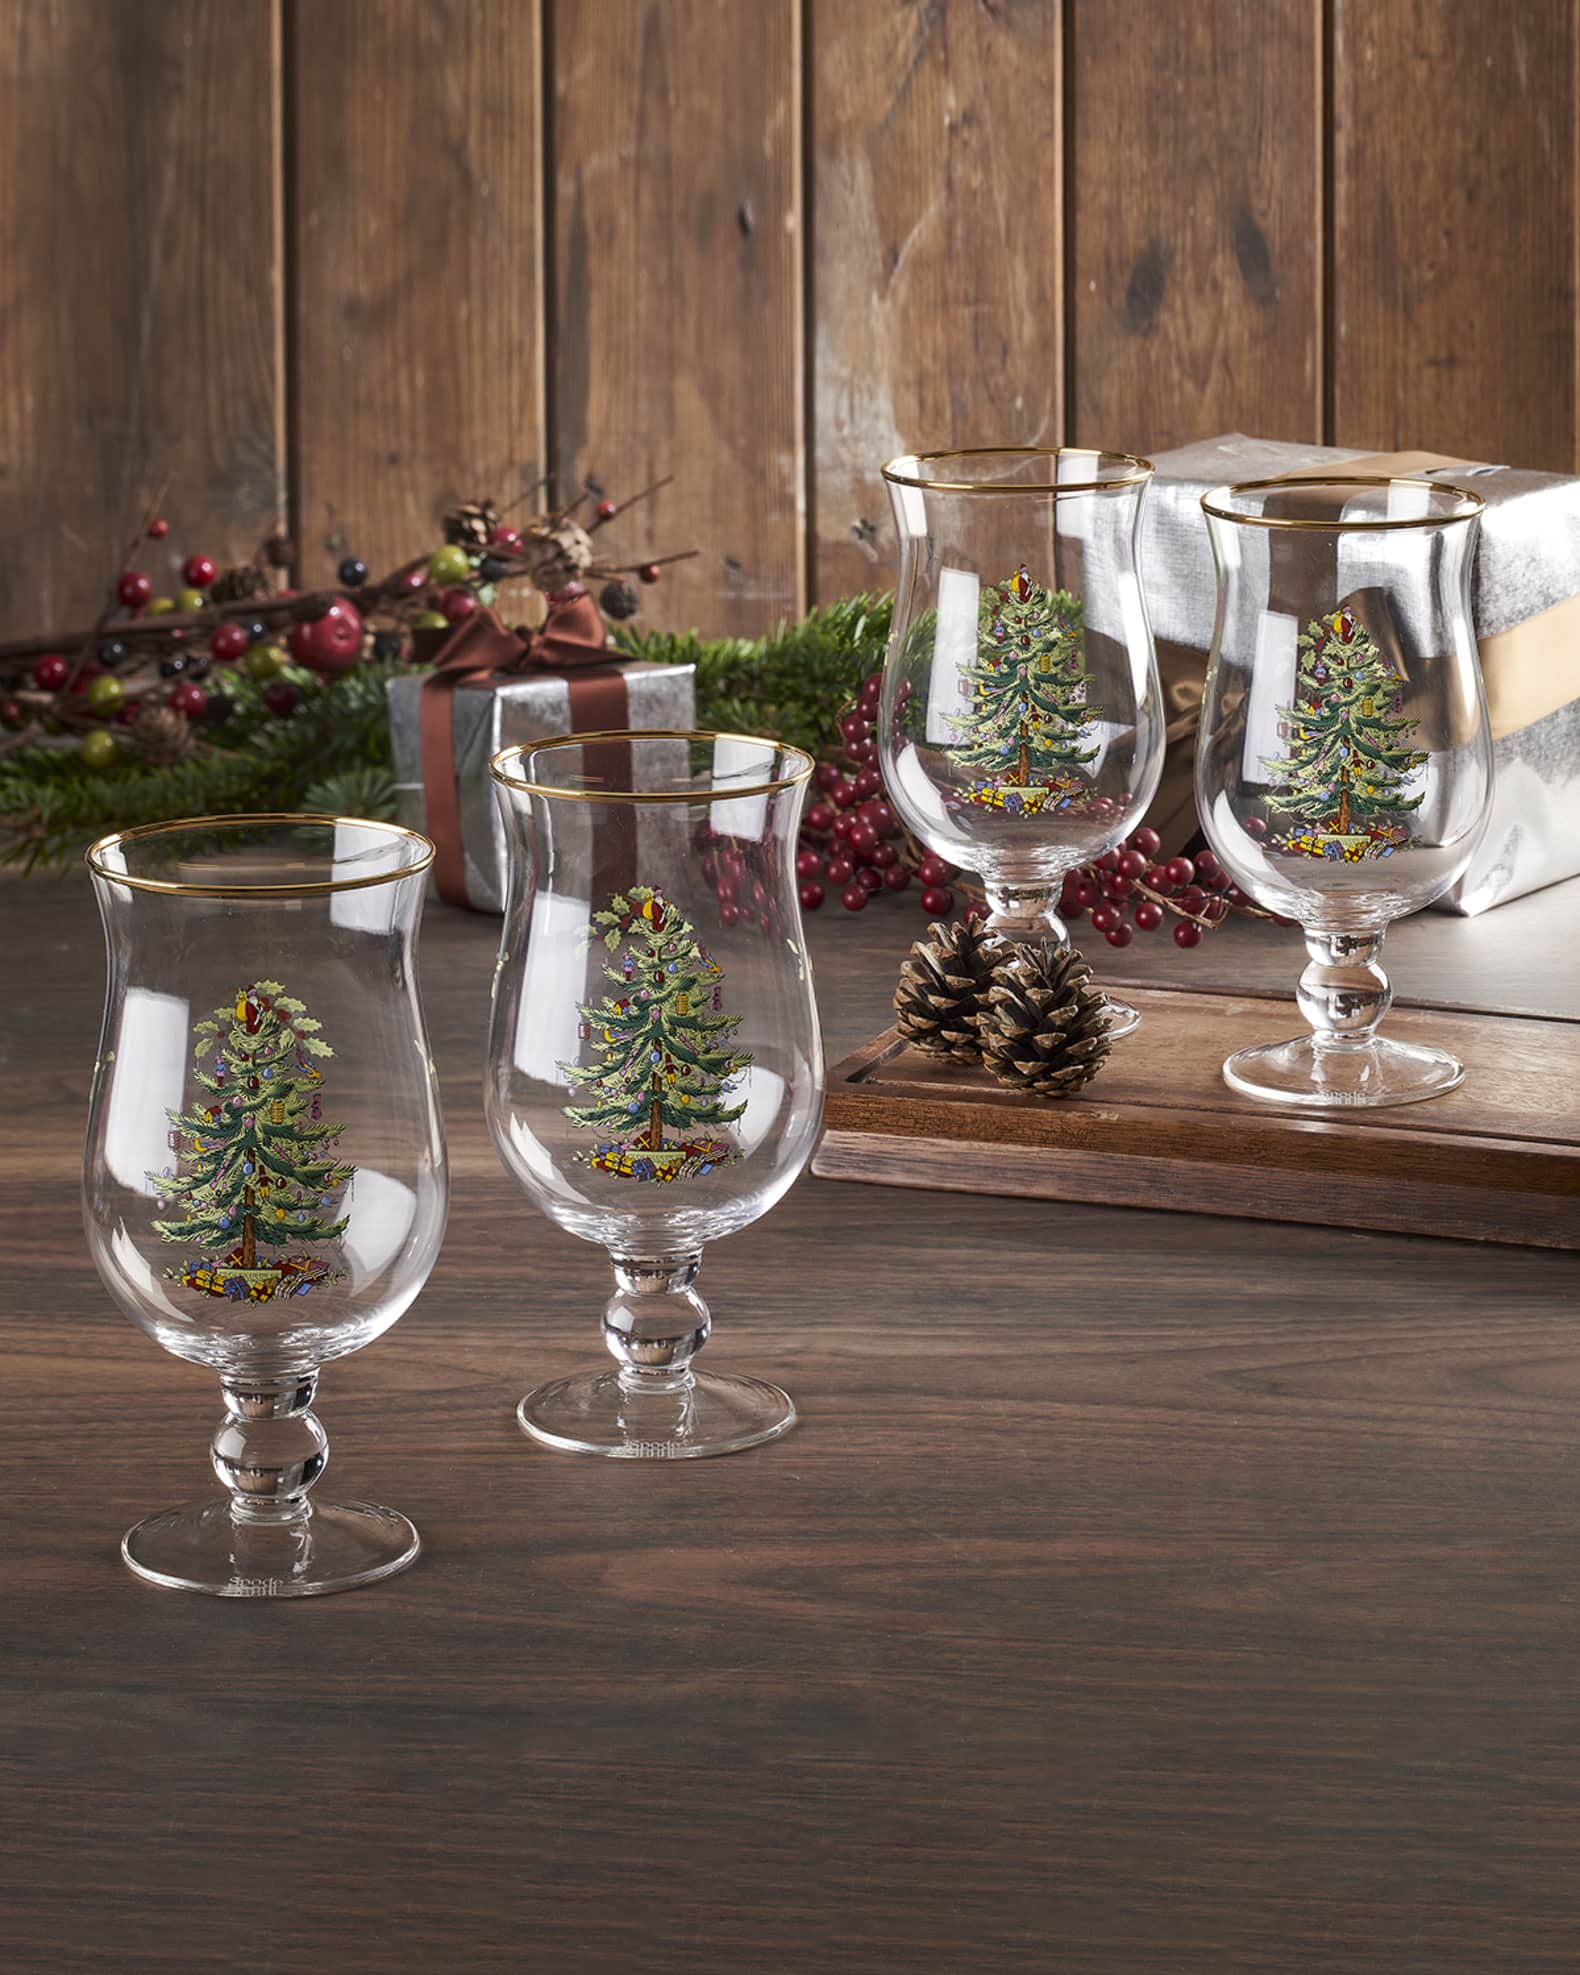 Christmas Tree Wine Glasses Set of 4